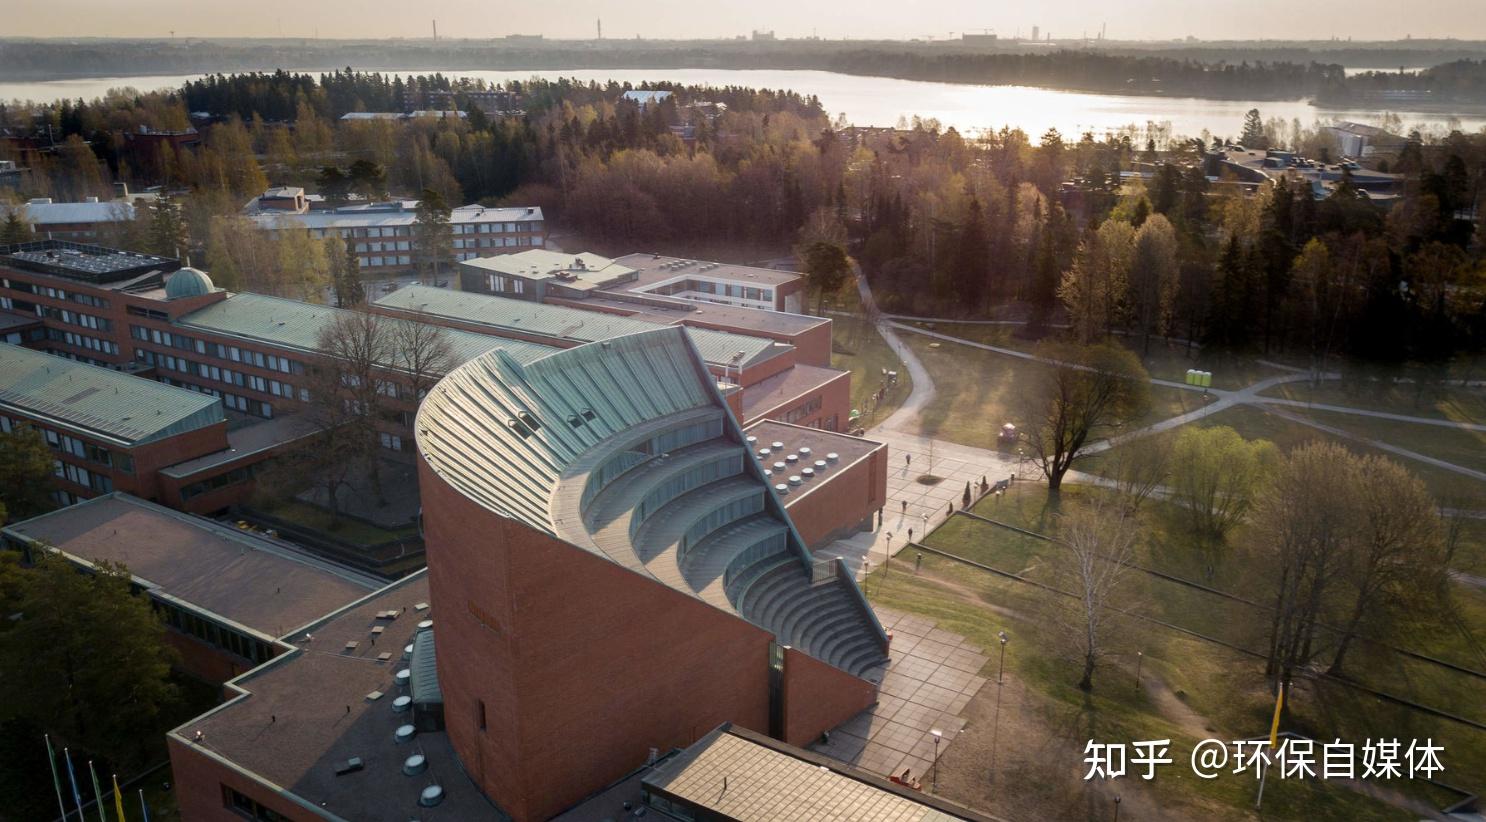 芬兰阿尔托大学位于芬兰首都赫尔辛基,是一所古老而创新力强的北欧